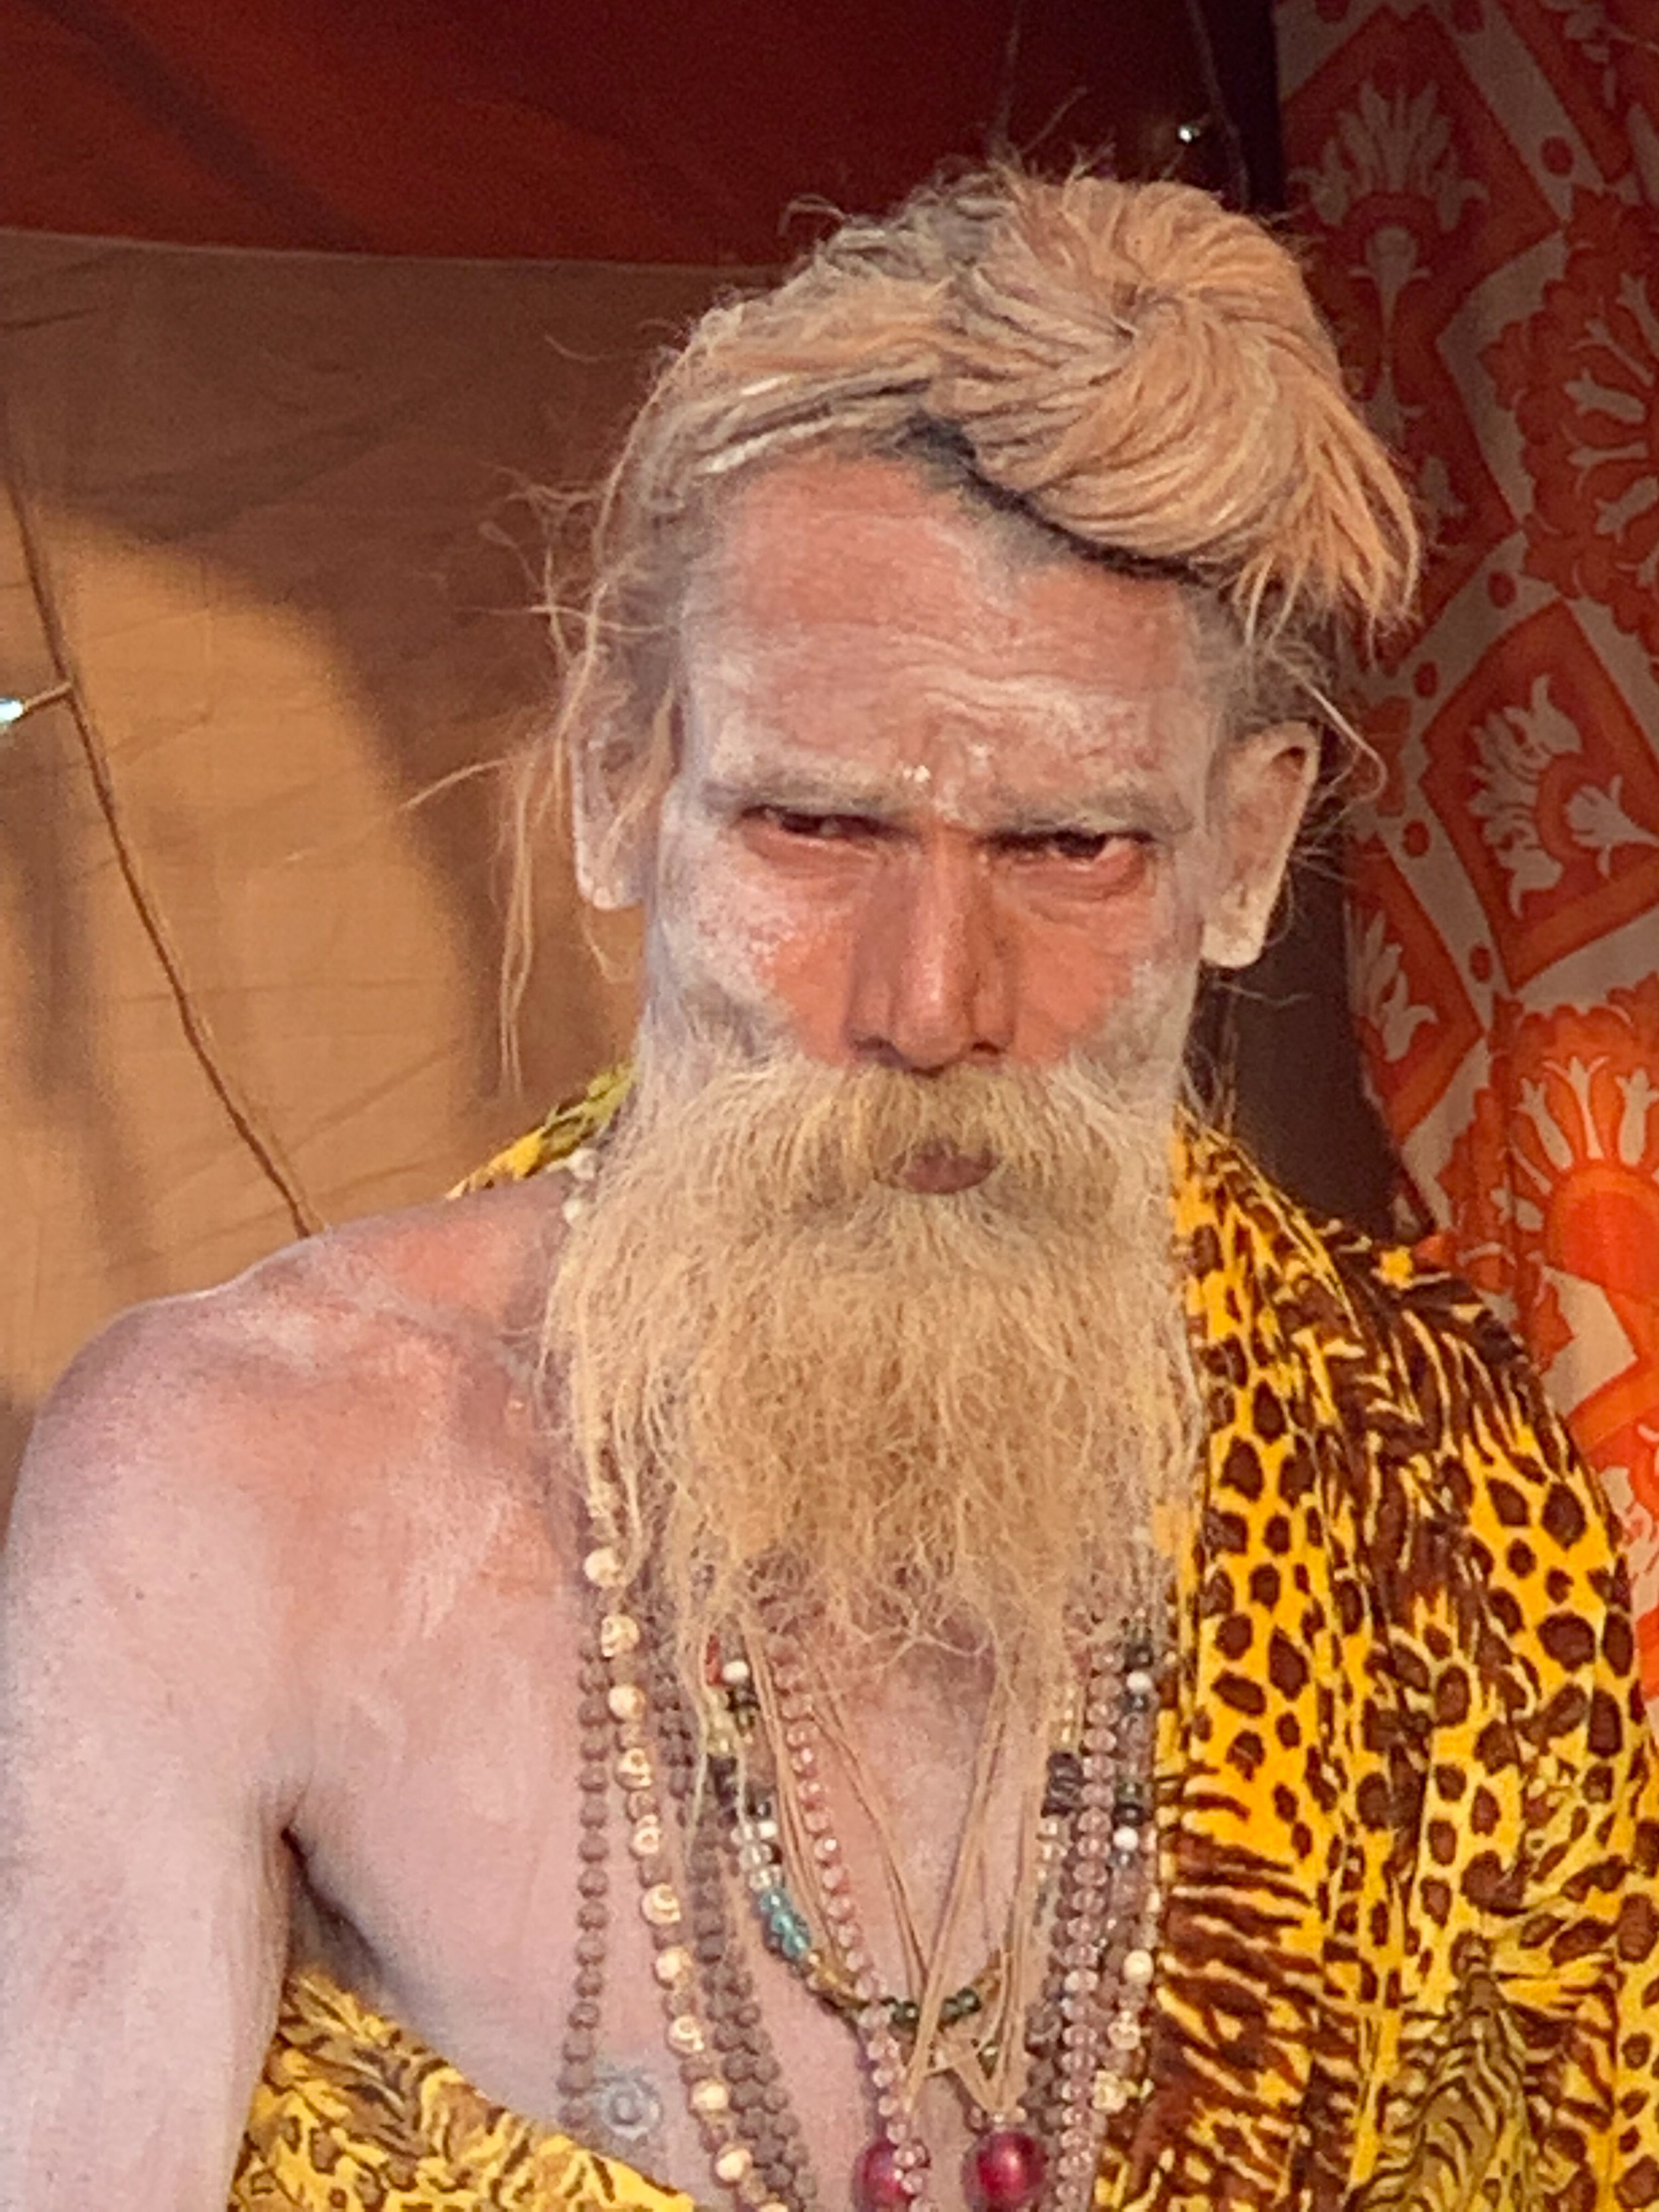 Sadhu at the Juna Akhara tents, Kumbh Mela, Prayagraj, India